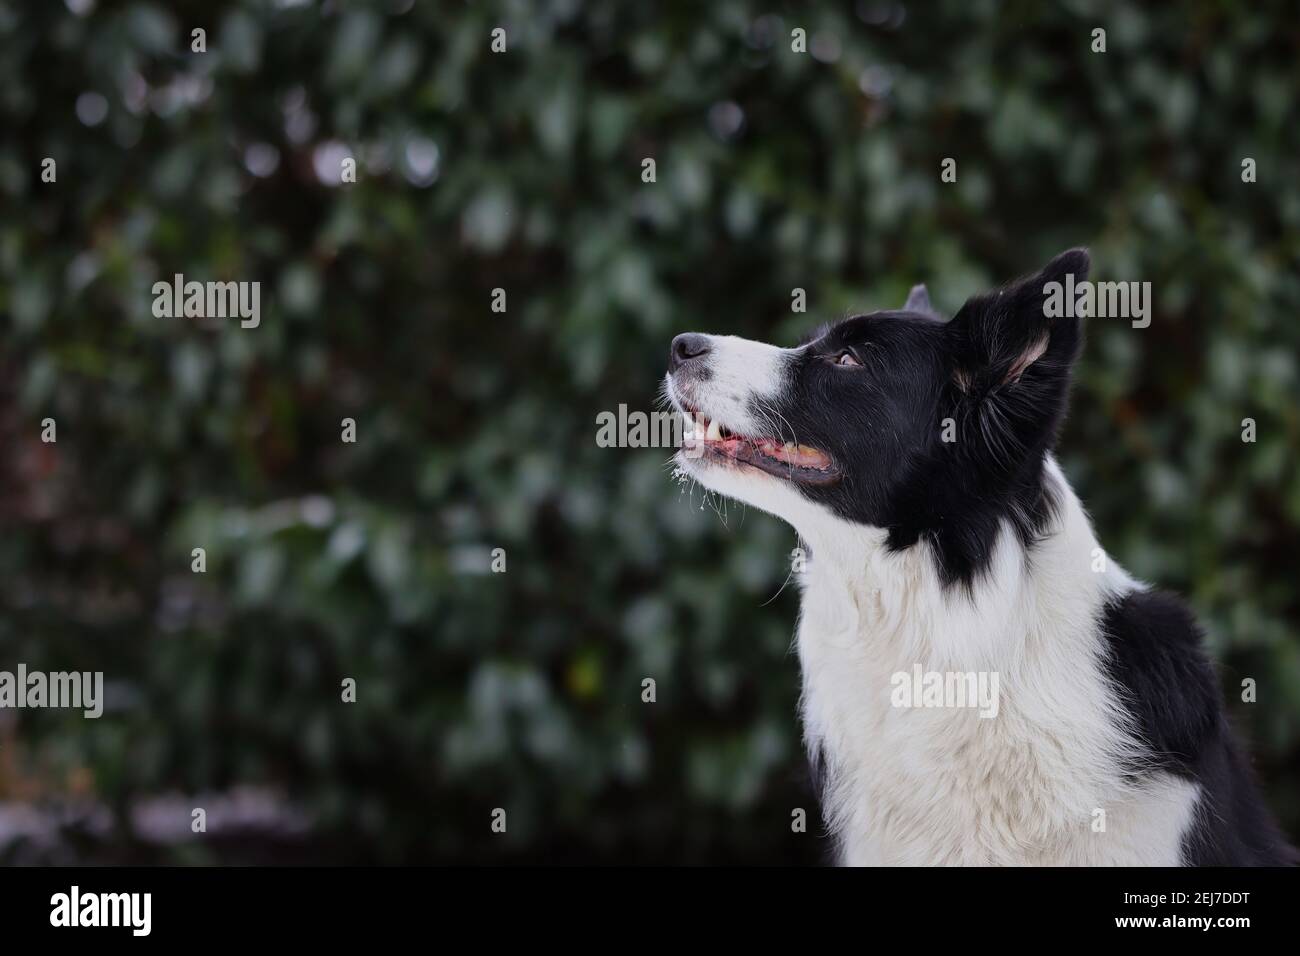 Perfil lateral de la frontera de ordeño Collie en la naturaleza Verde. Lindo perro blanco y negro mira en el jardín. Foto de stock